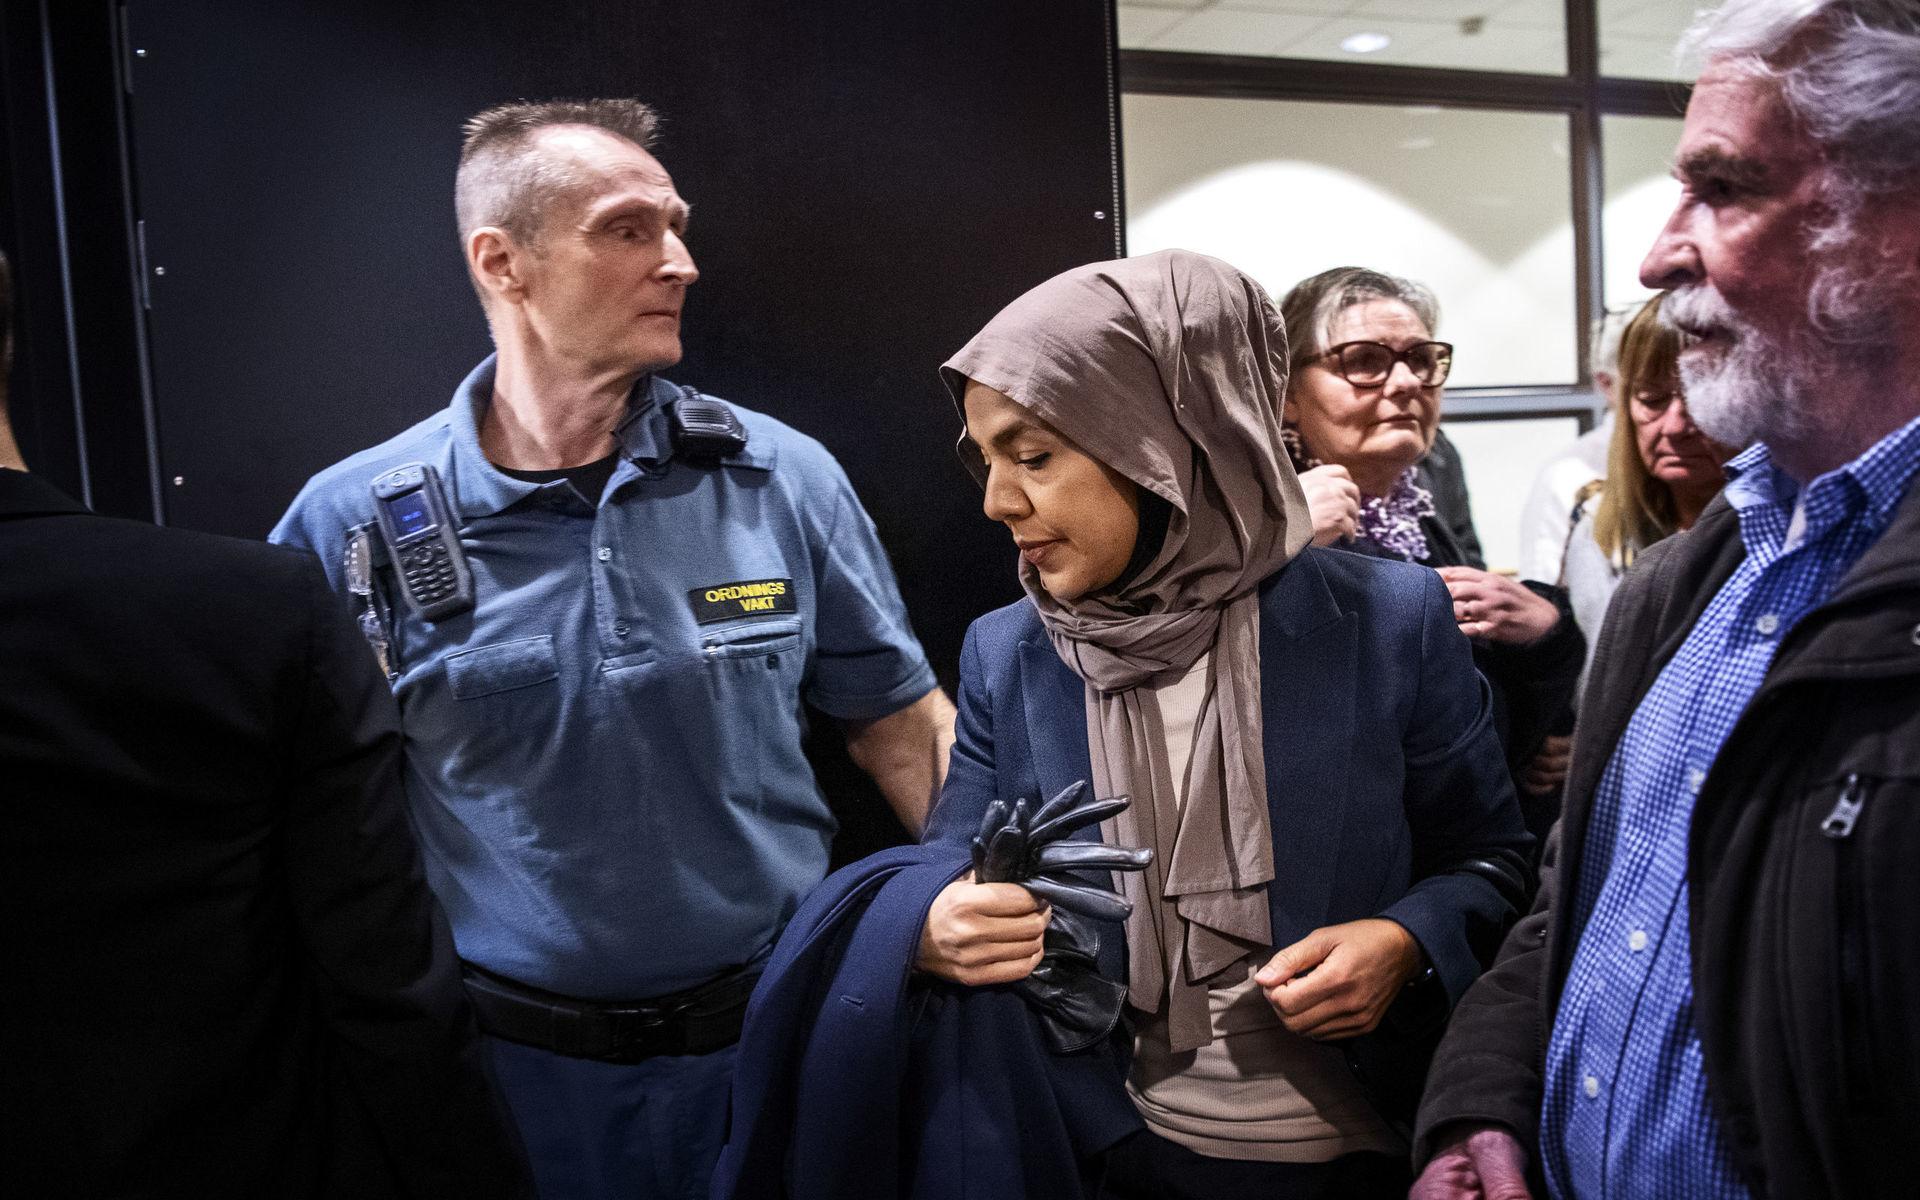 En av de målsägande i förtalsrättegången mot Ann-Sofie Hermansson, Fatima Doubakil på väg in i rättssalen under rättegångens första dag.